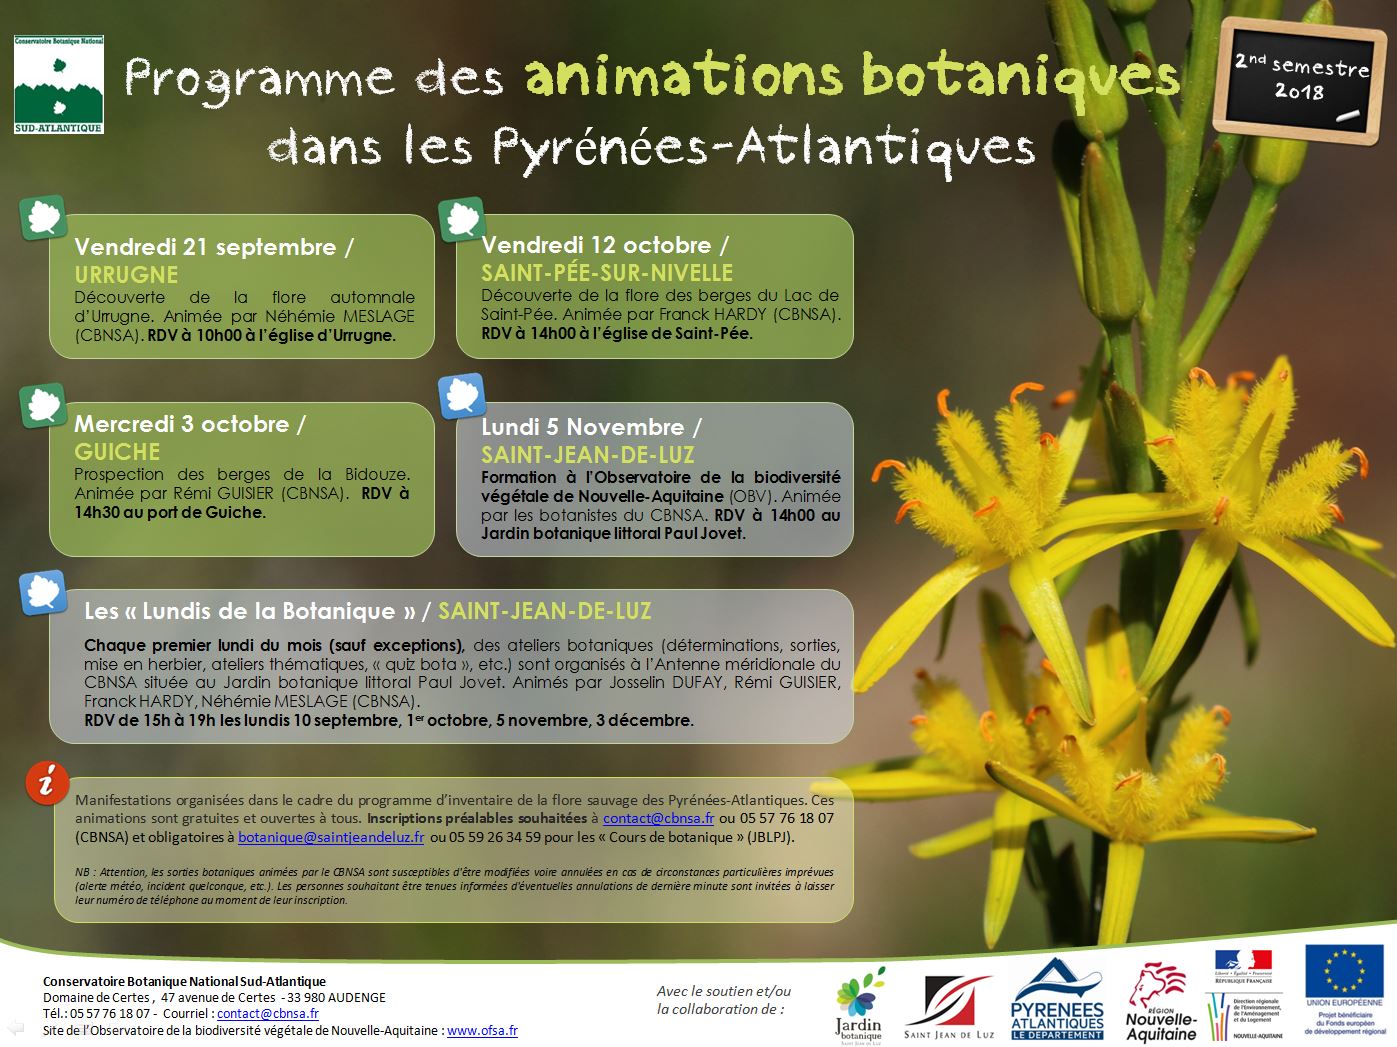 Programme des animations botaniques dans les Pyrénées-Atlantiques - Automne 2018